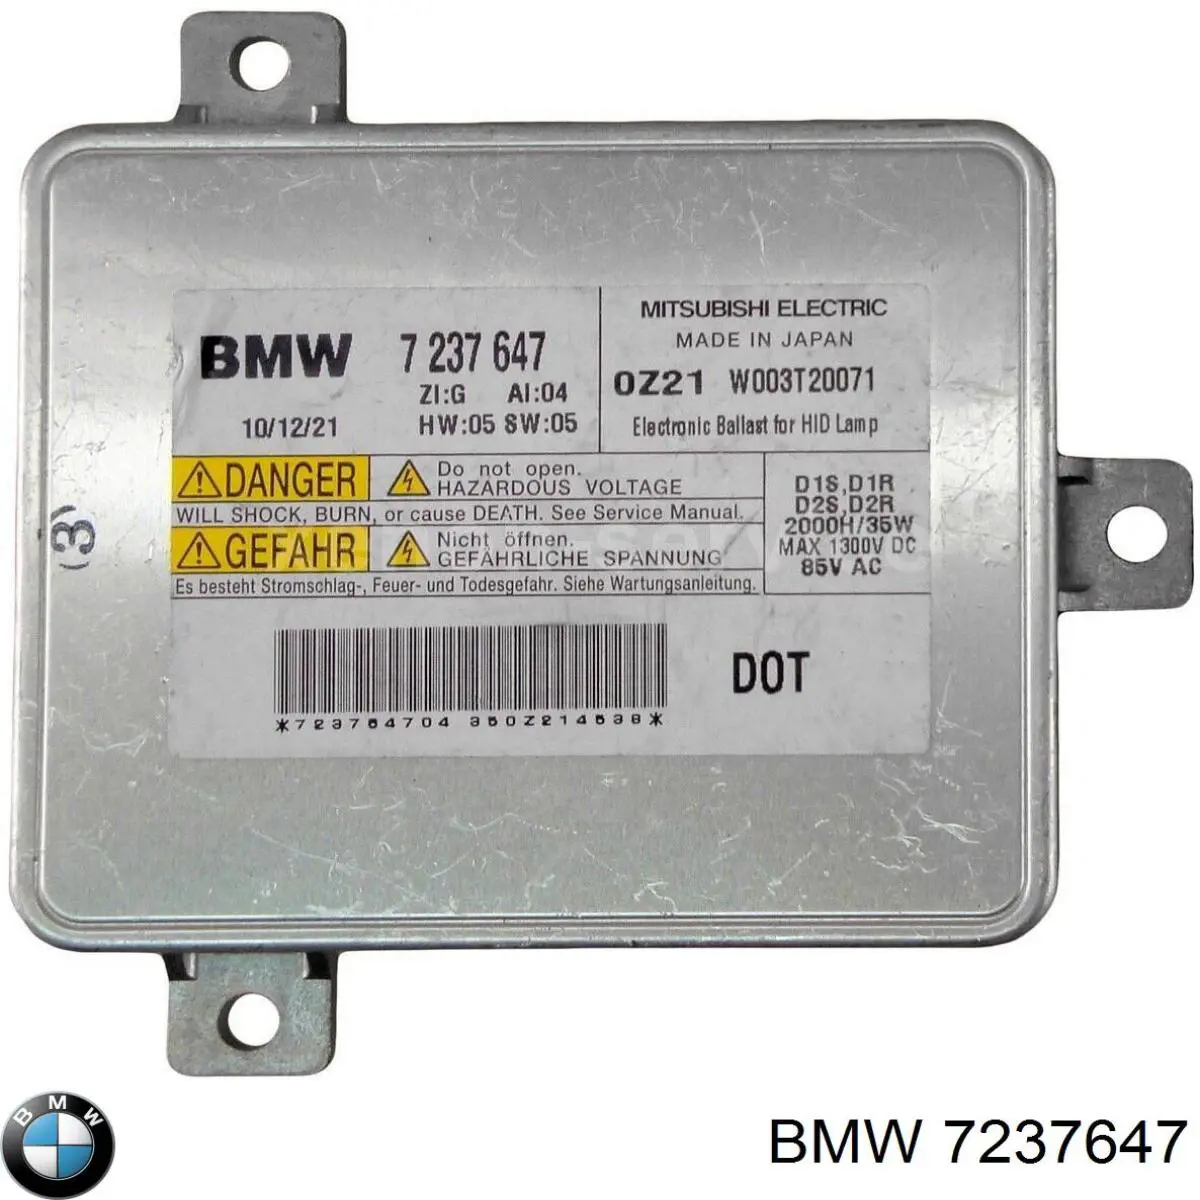 7237647 BMW bobina de reactancia, lámpara de descarga de gas